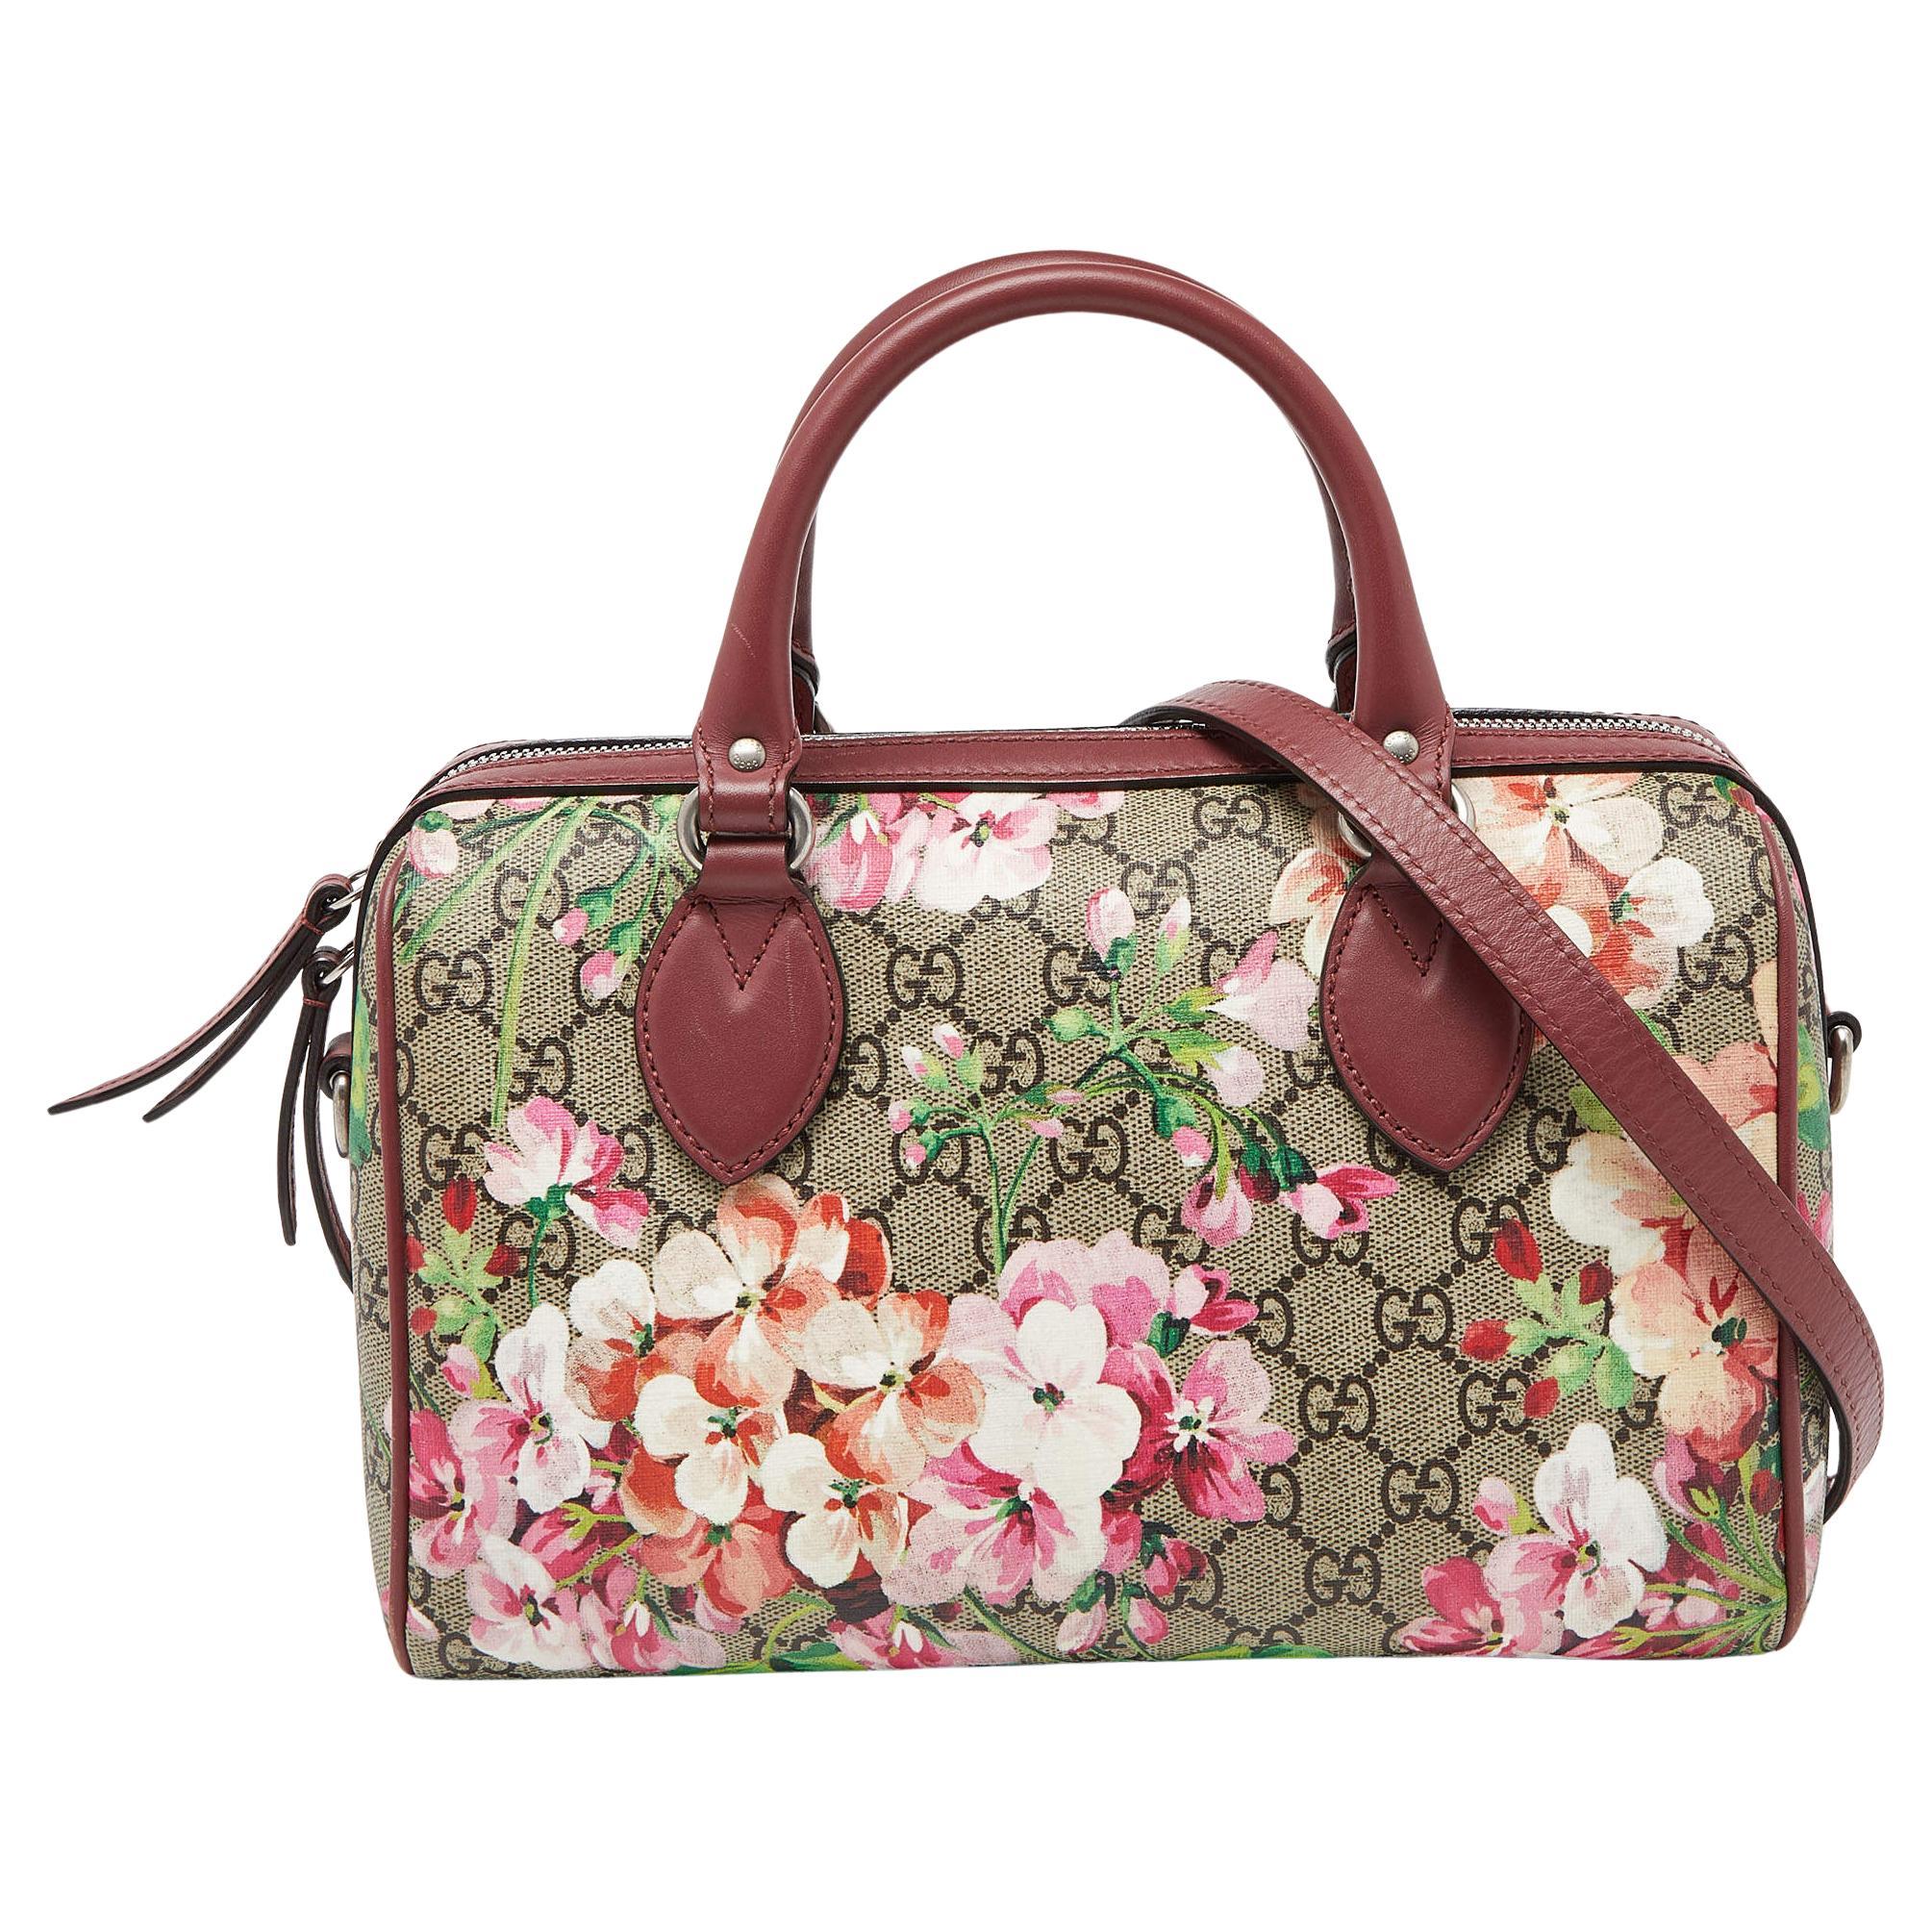 Gucci Multicolor GG Supreme Canvas and Leather Small Blooms Boston Bag